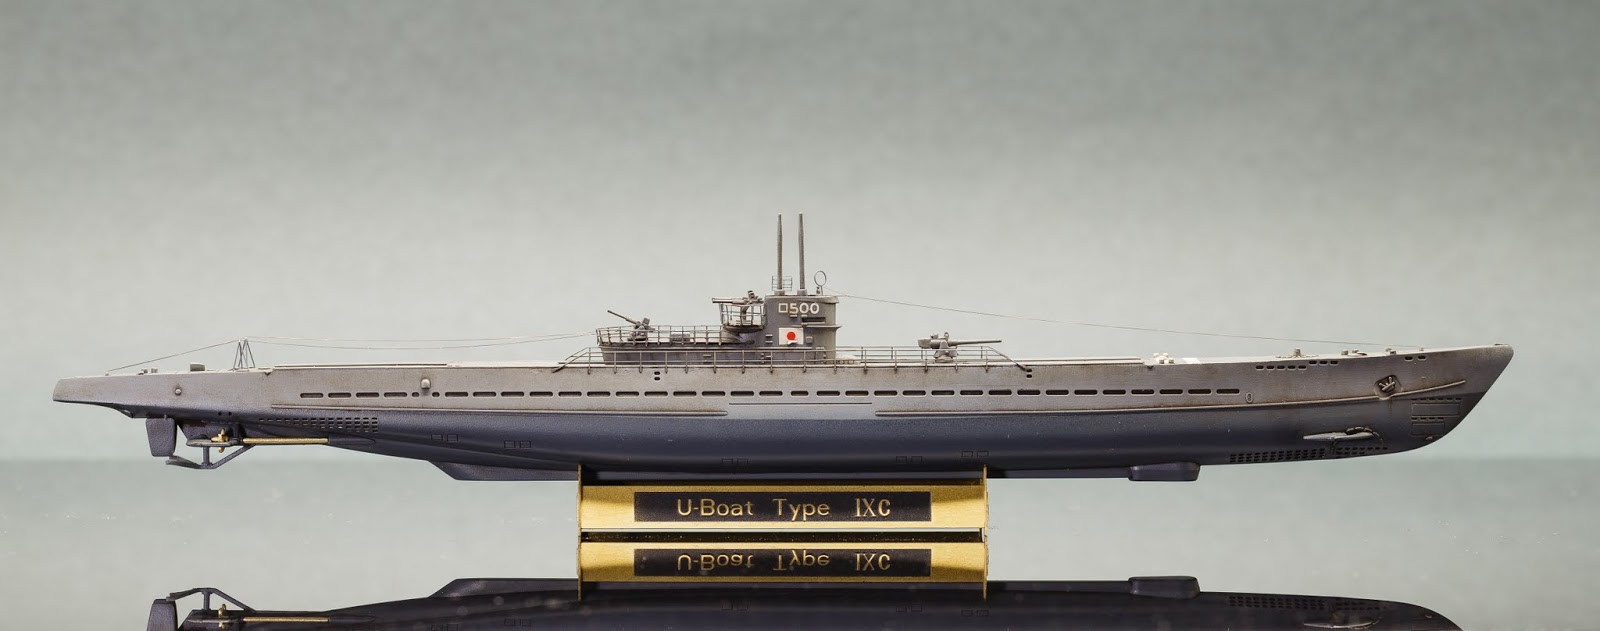 作品分享 1 350 Hobby Boss 大日本帝国海軍呂号第五百潜水艦 模型技術與資訊哈啦板 巴哈姆特